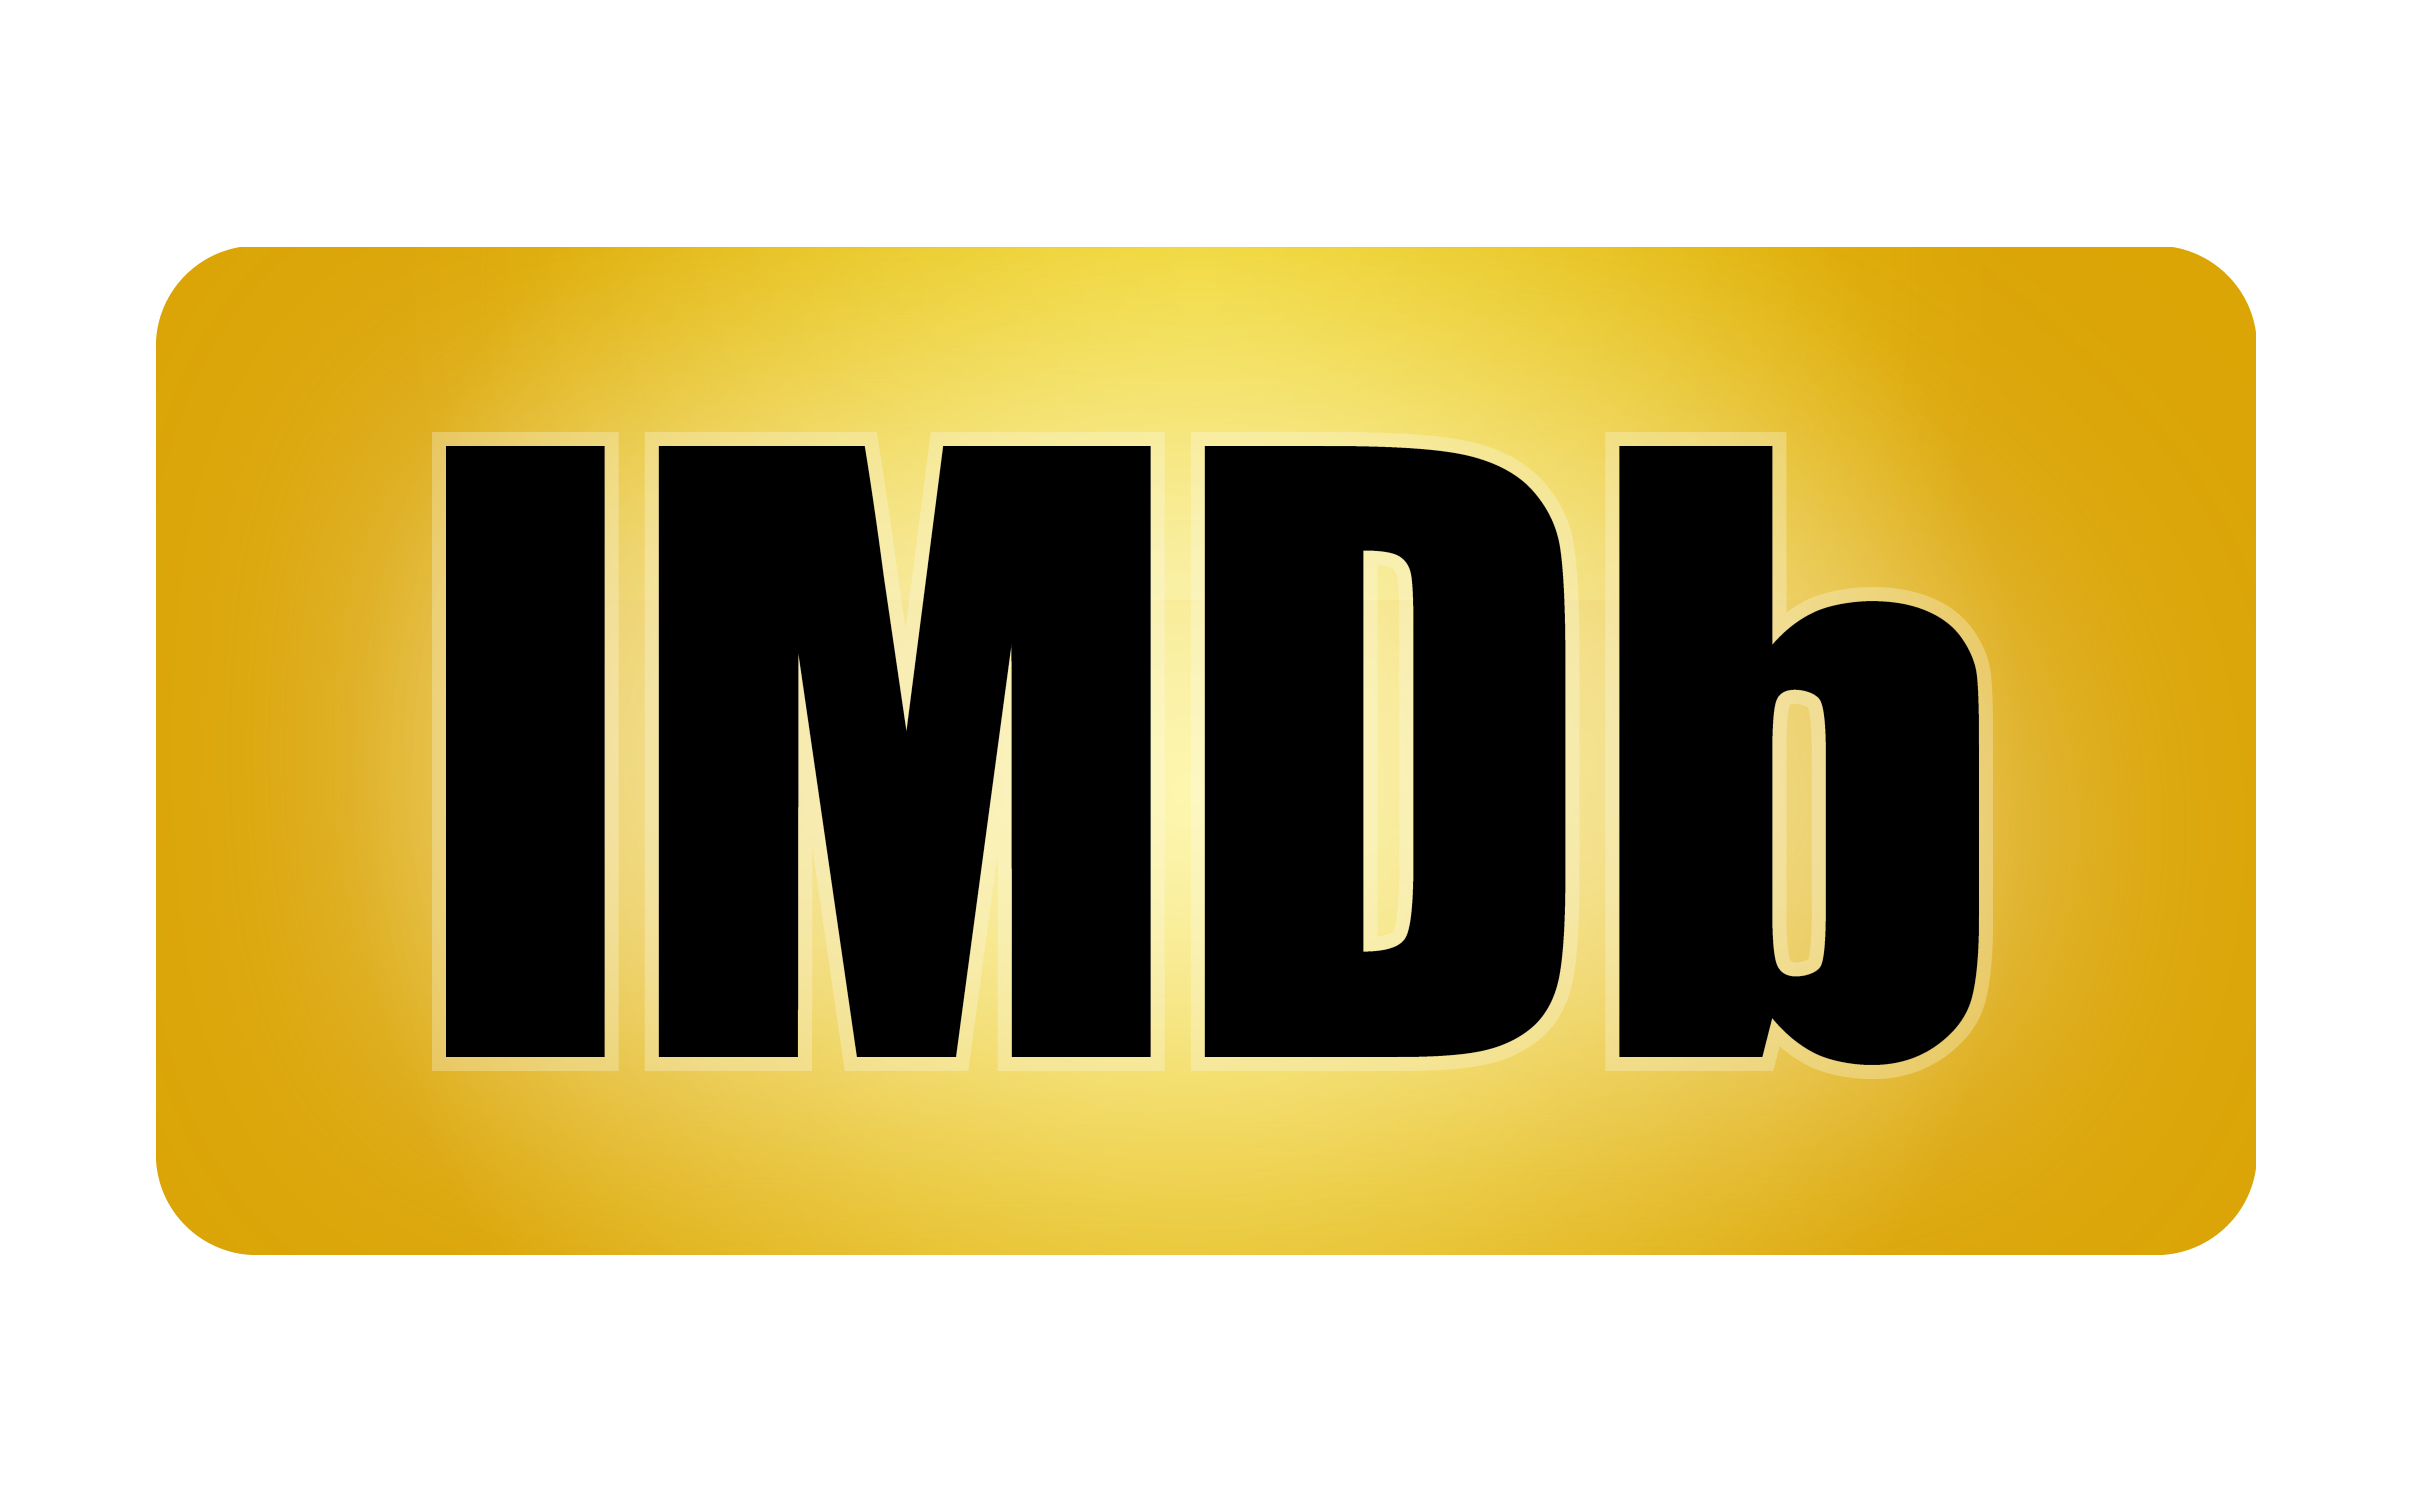 Internet Movie Database logo